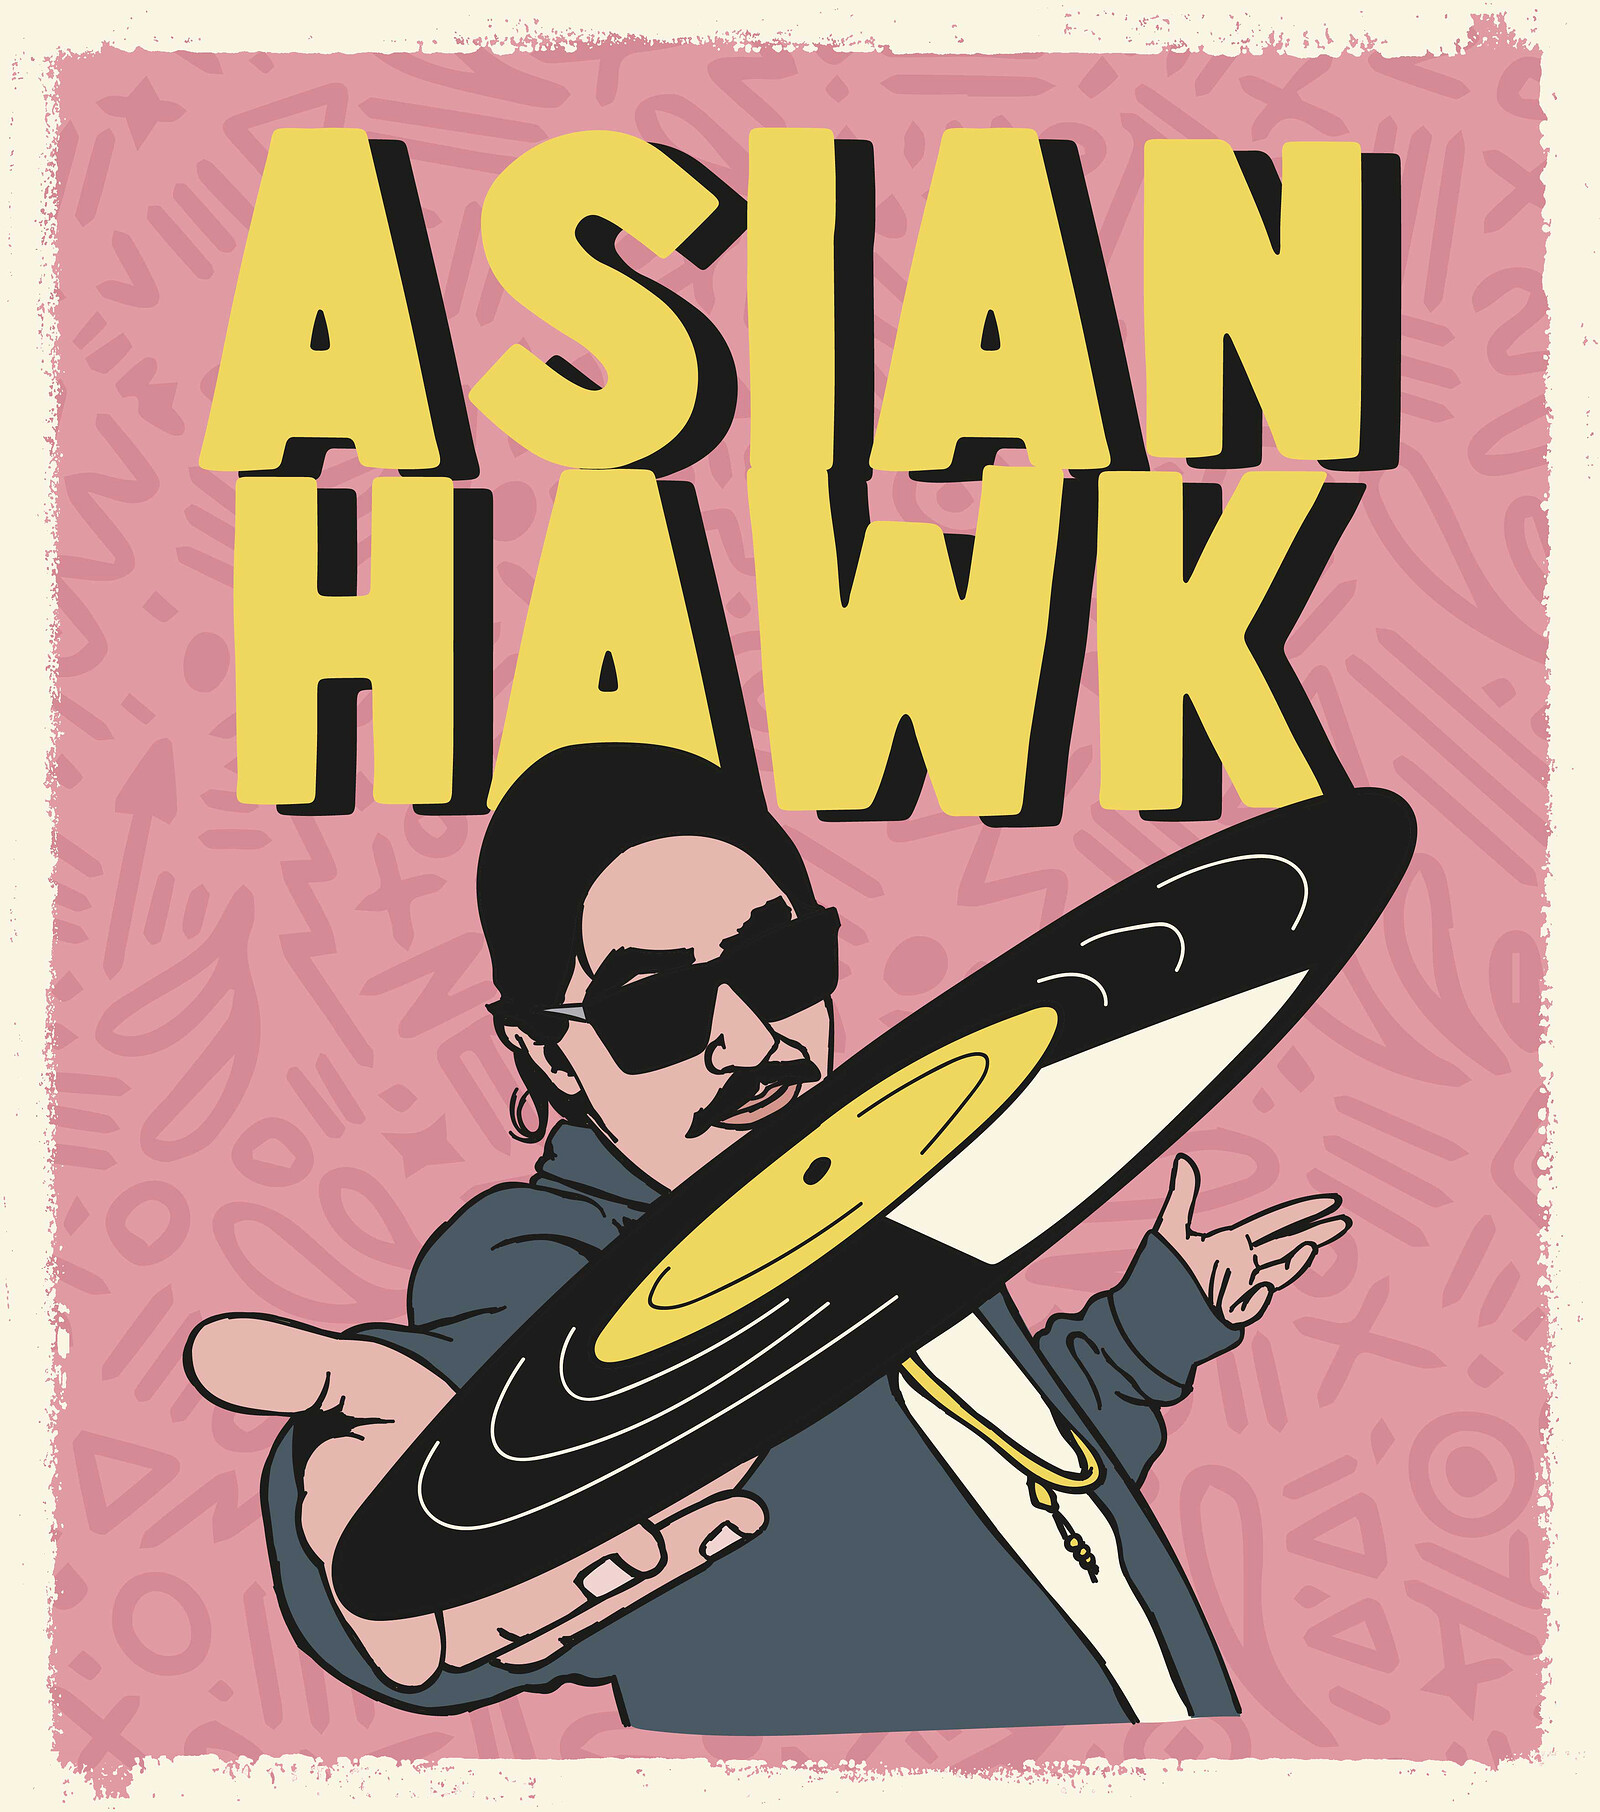 DJ Asian Hawk at No. 51s